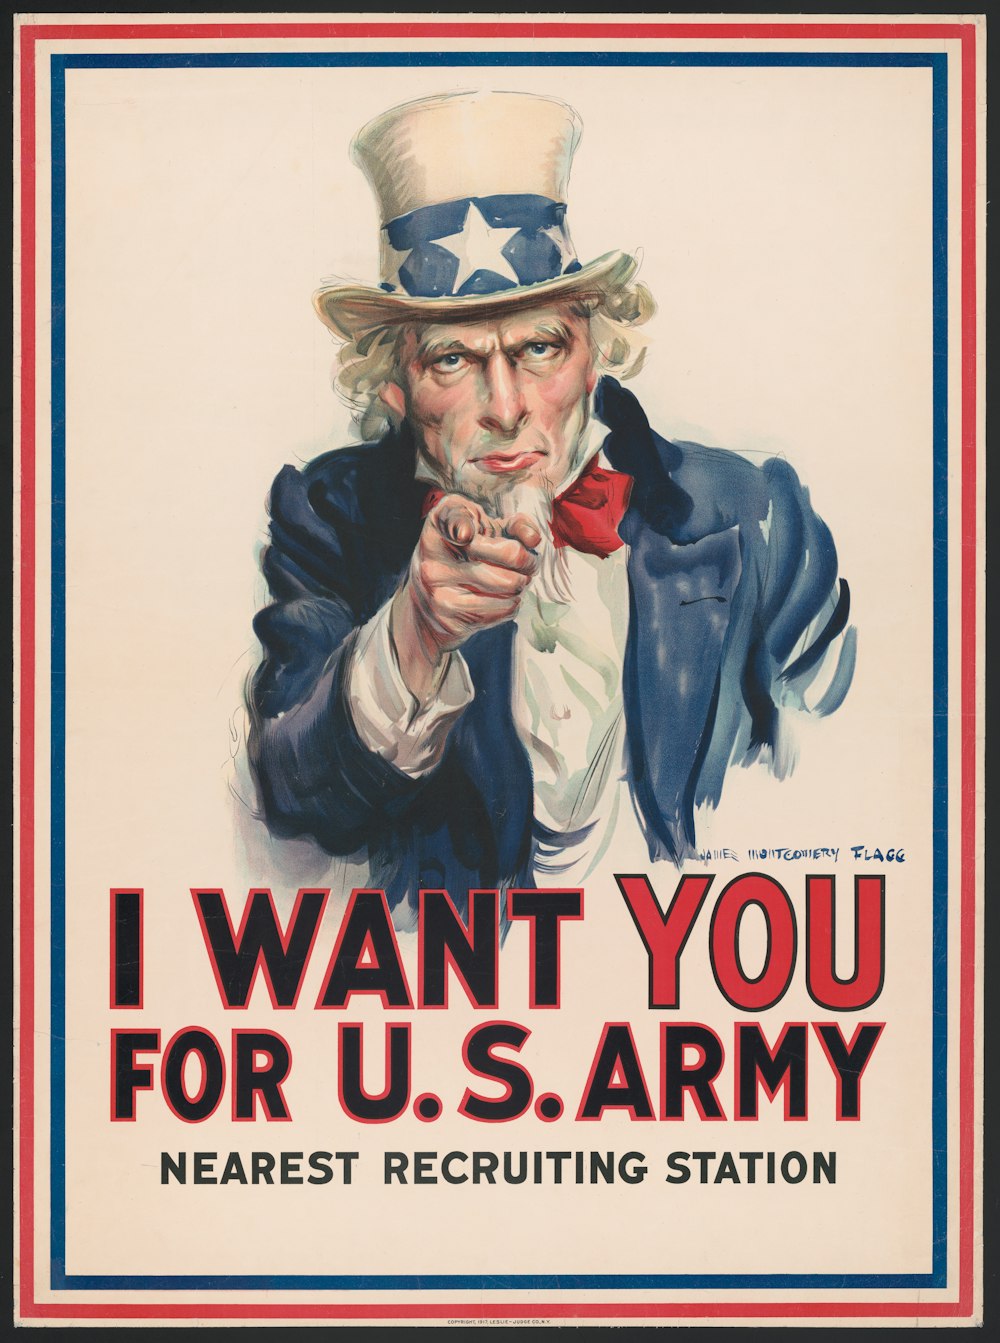 Ich will dich für die U.S. Army